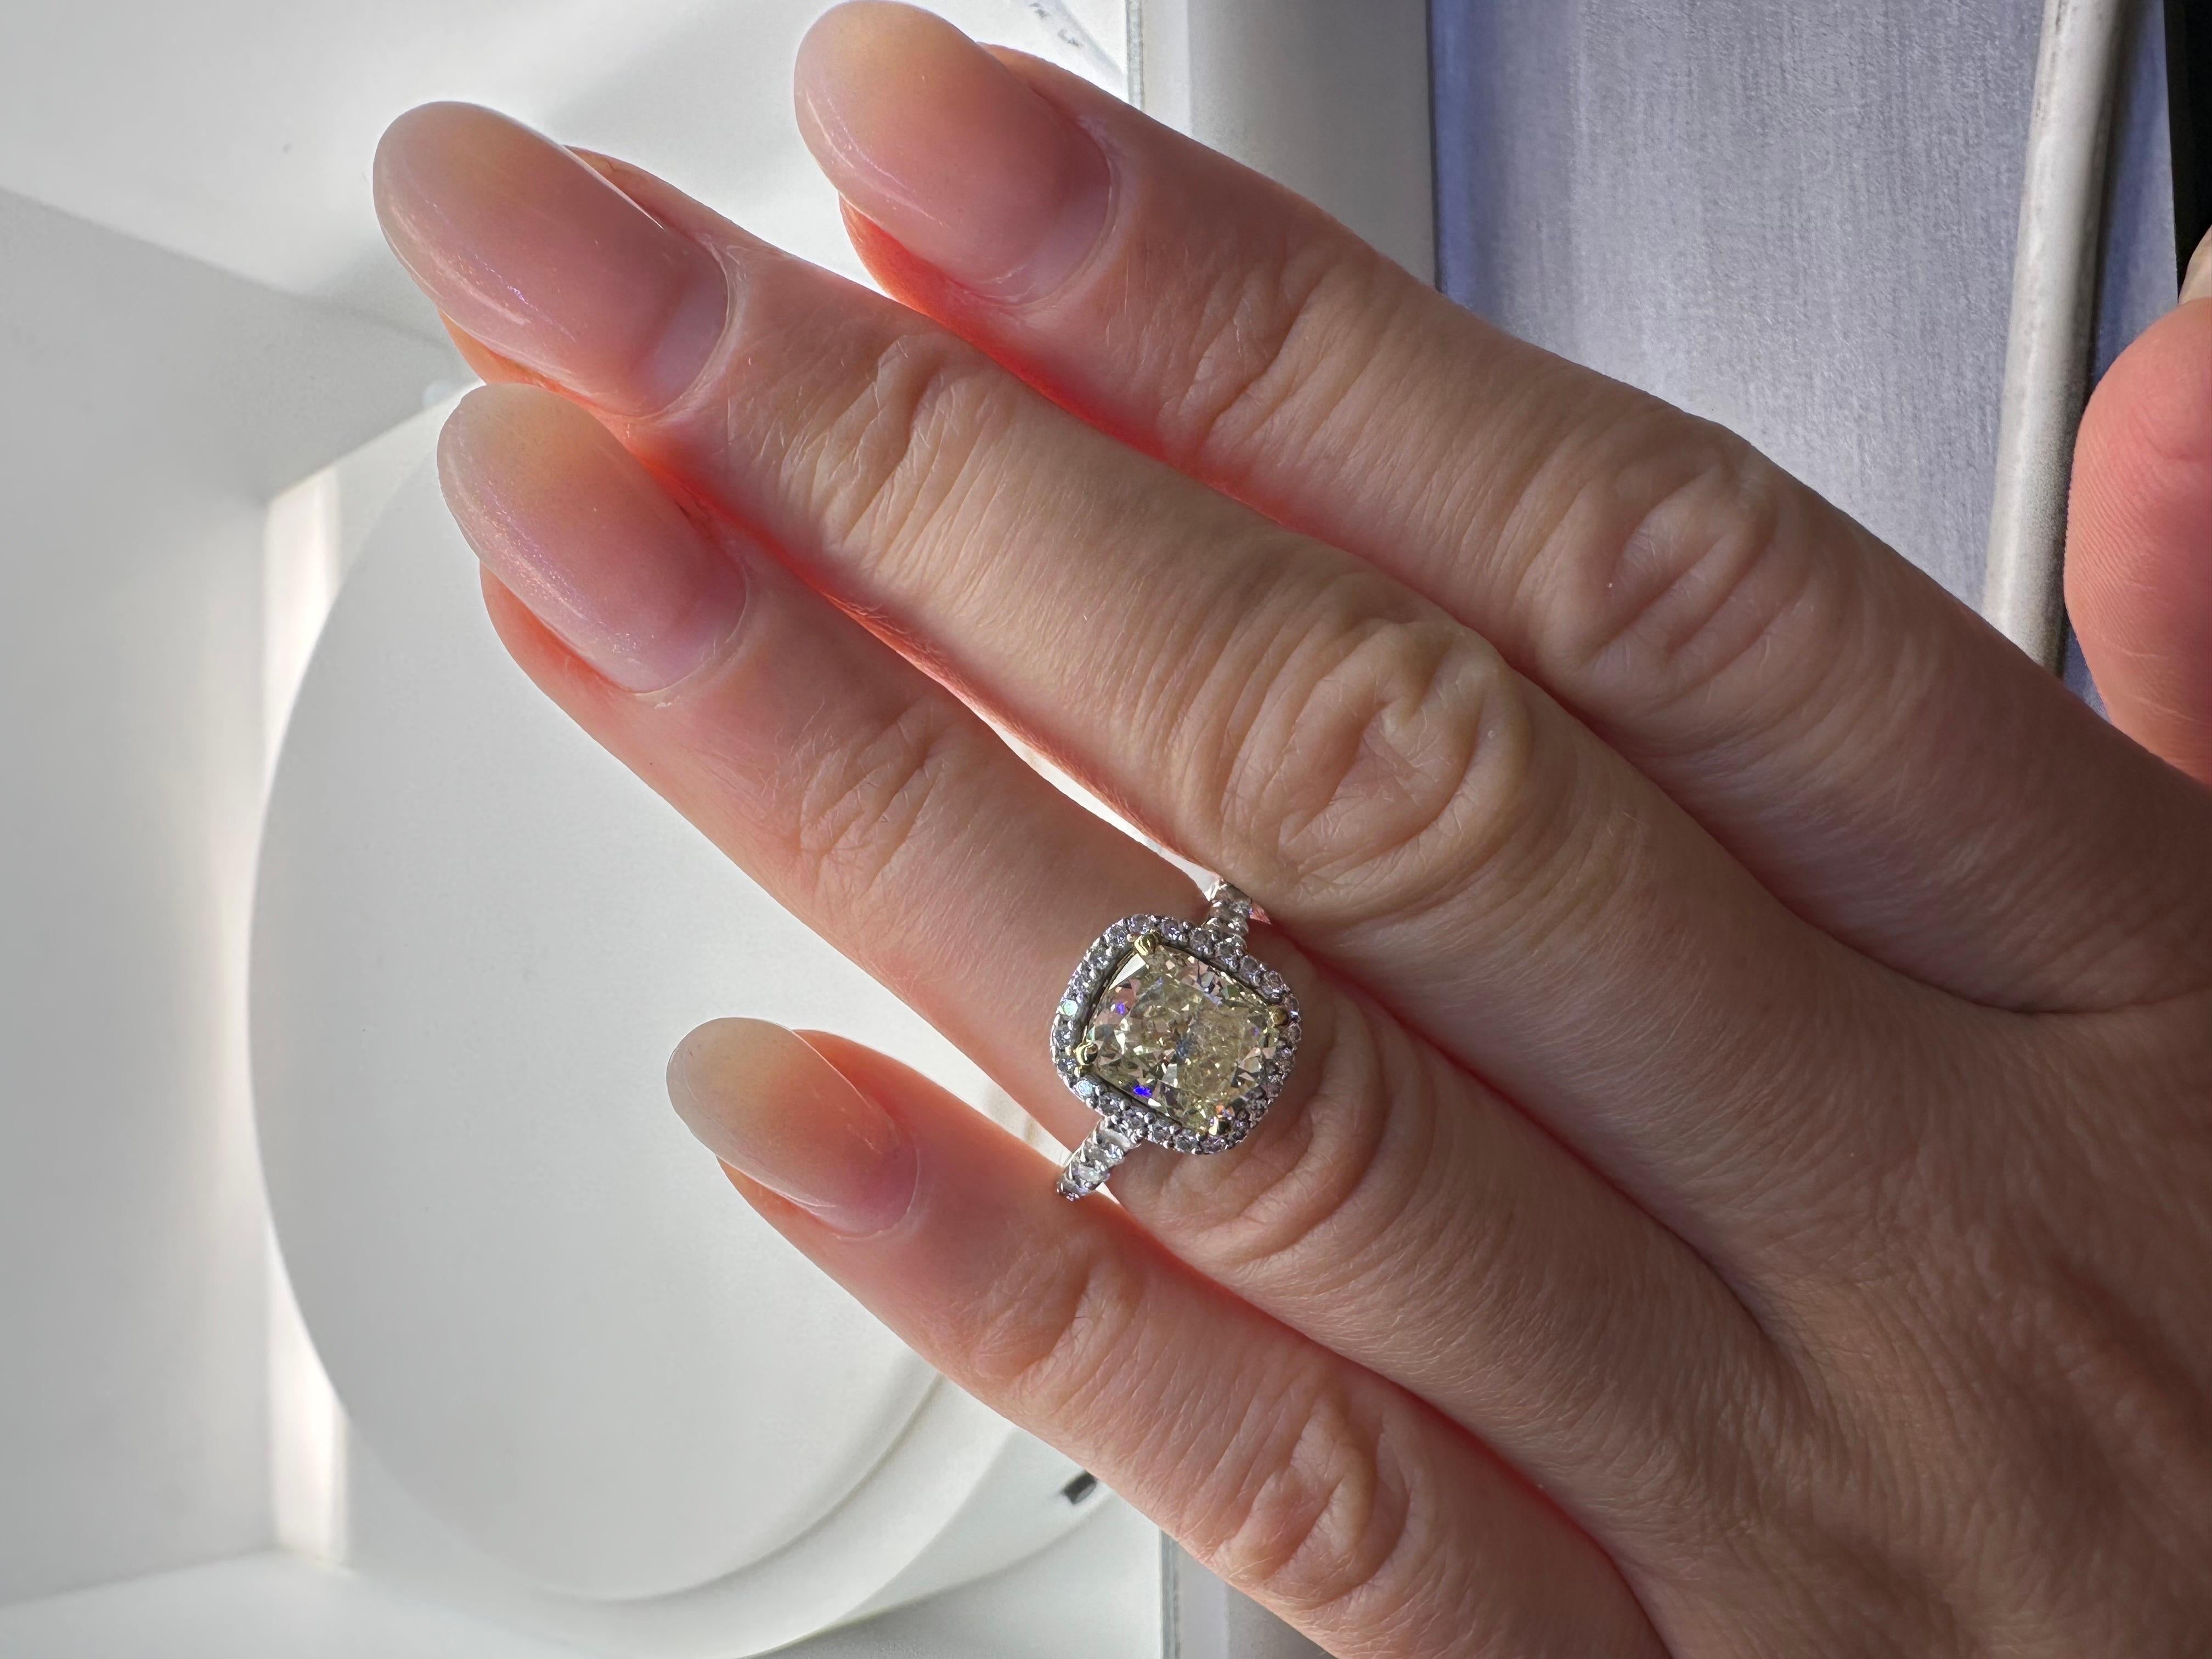 GIA-zertifizierter Diamantring aus 18KT Weißgold. Atemberaubend funkelnder Mittelstein für eine Königin!

Metall Typ: 18KT
Natürliche Seite Diamant(en):
Farbe: F-G
Schliff:Runder Brillant
Karat: 0,55ct
Klarheit: VS-SI

Naturzentrum Diamant(en):